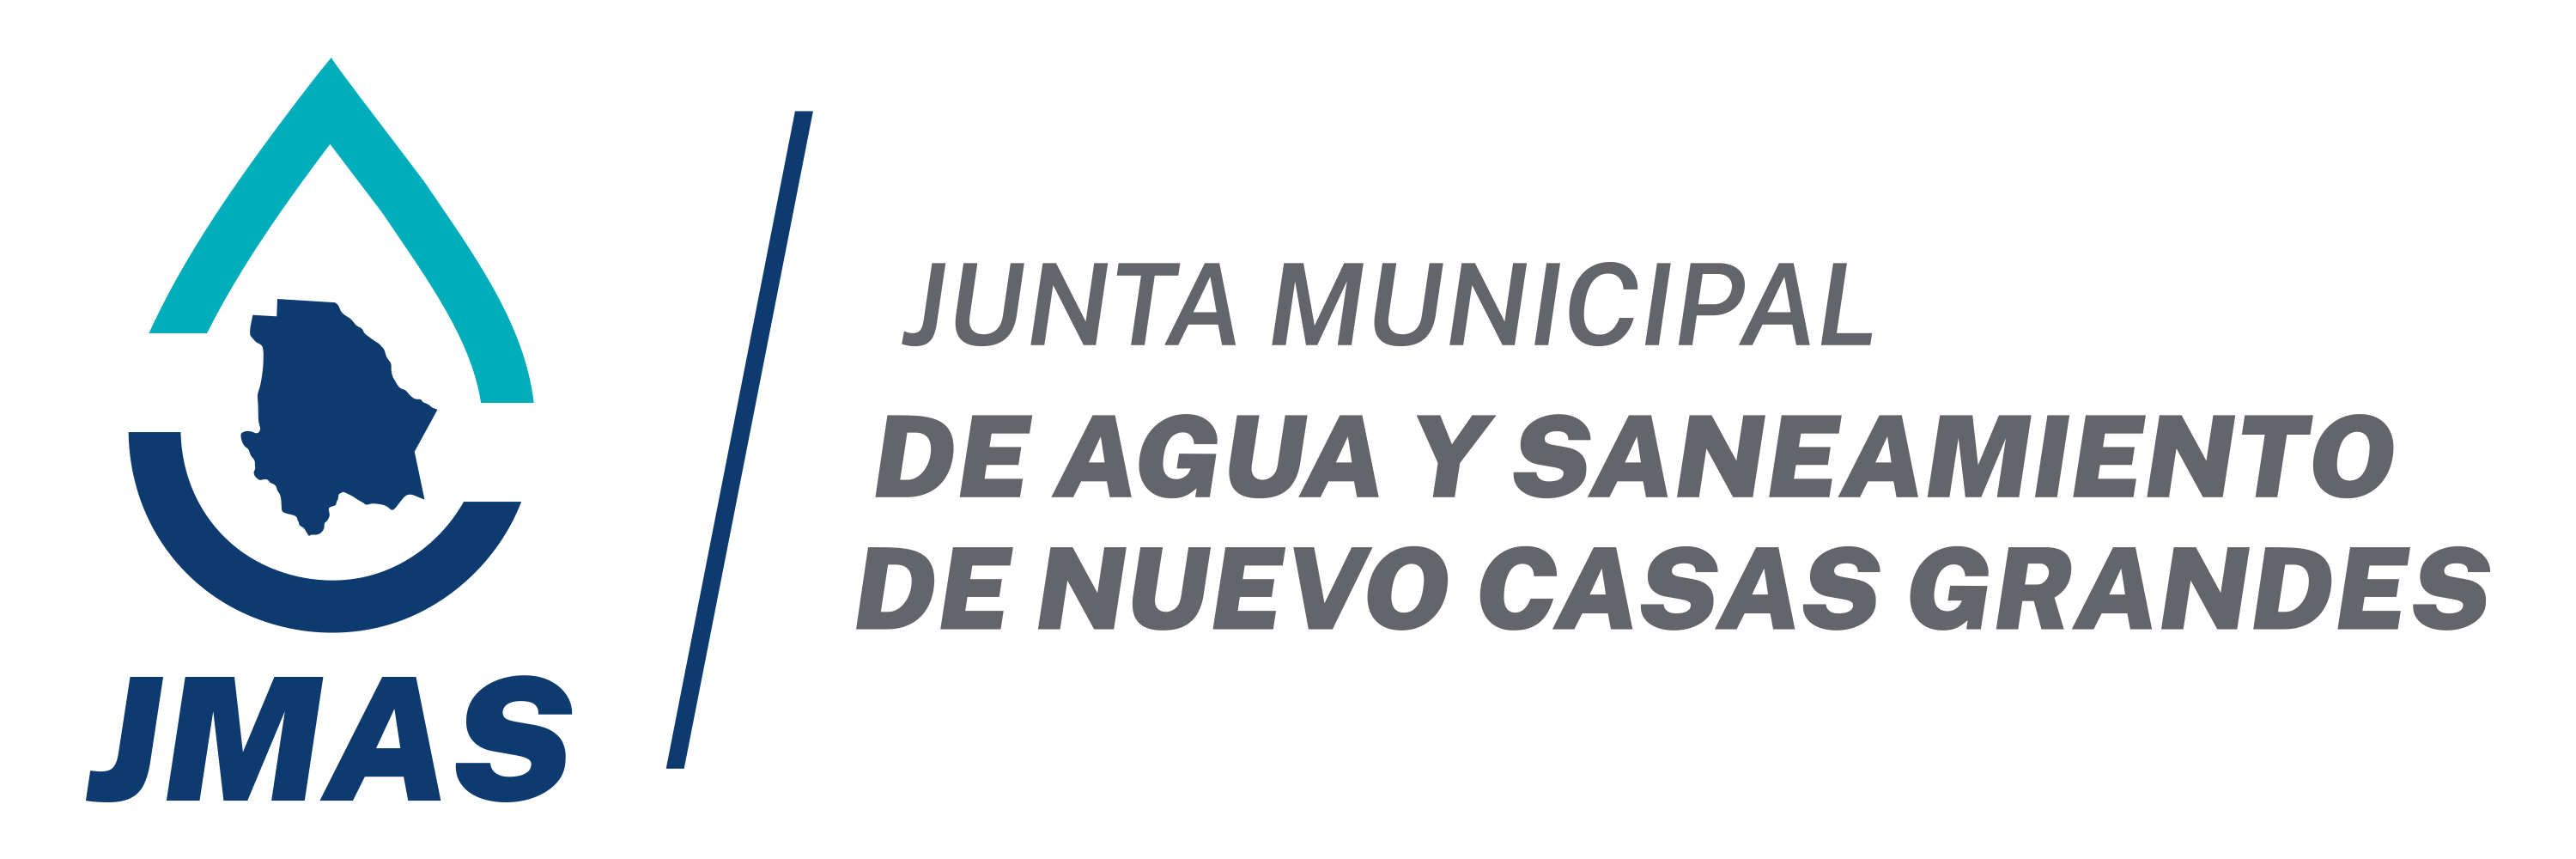 JMAS – Nuevo Casas Grandes